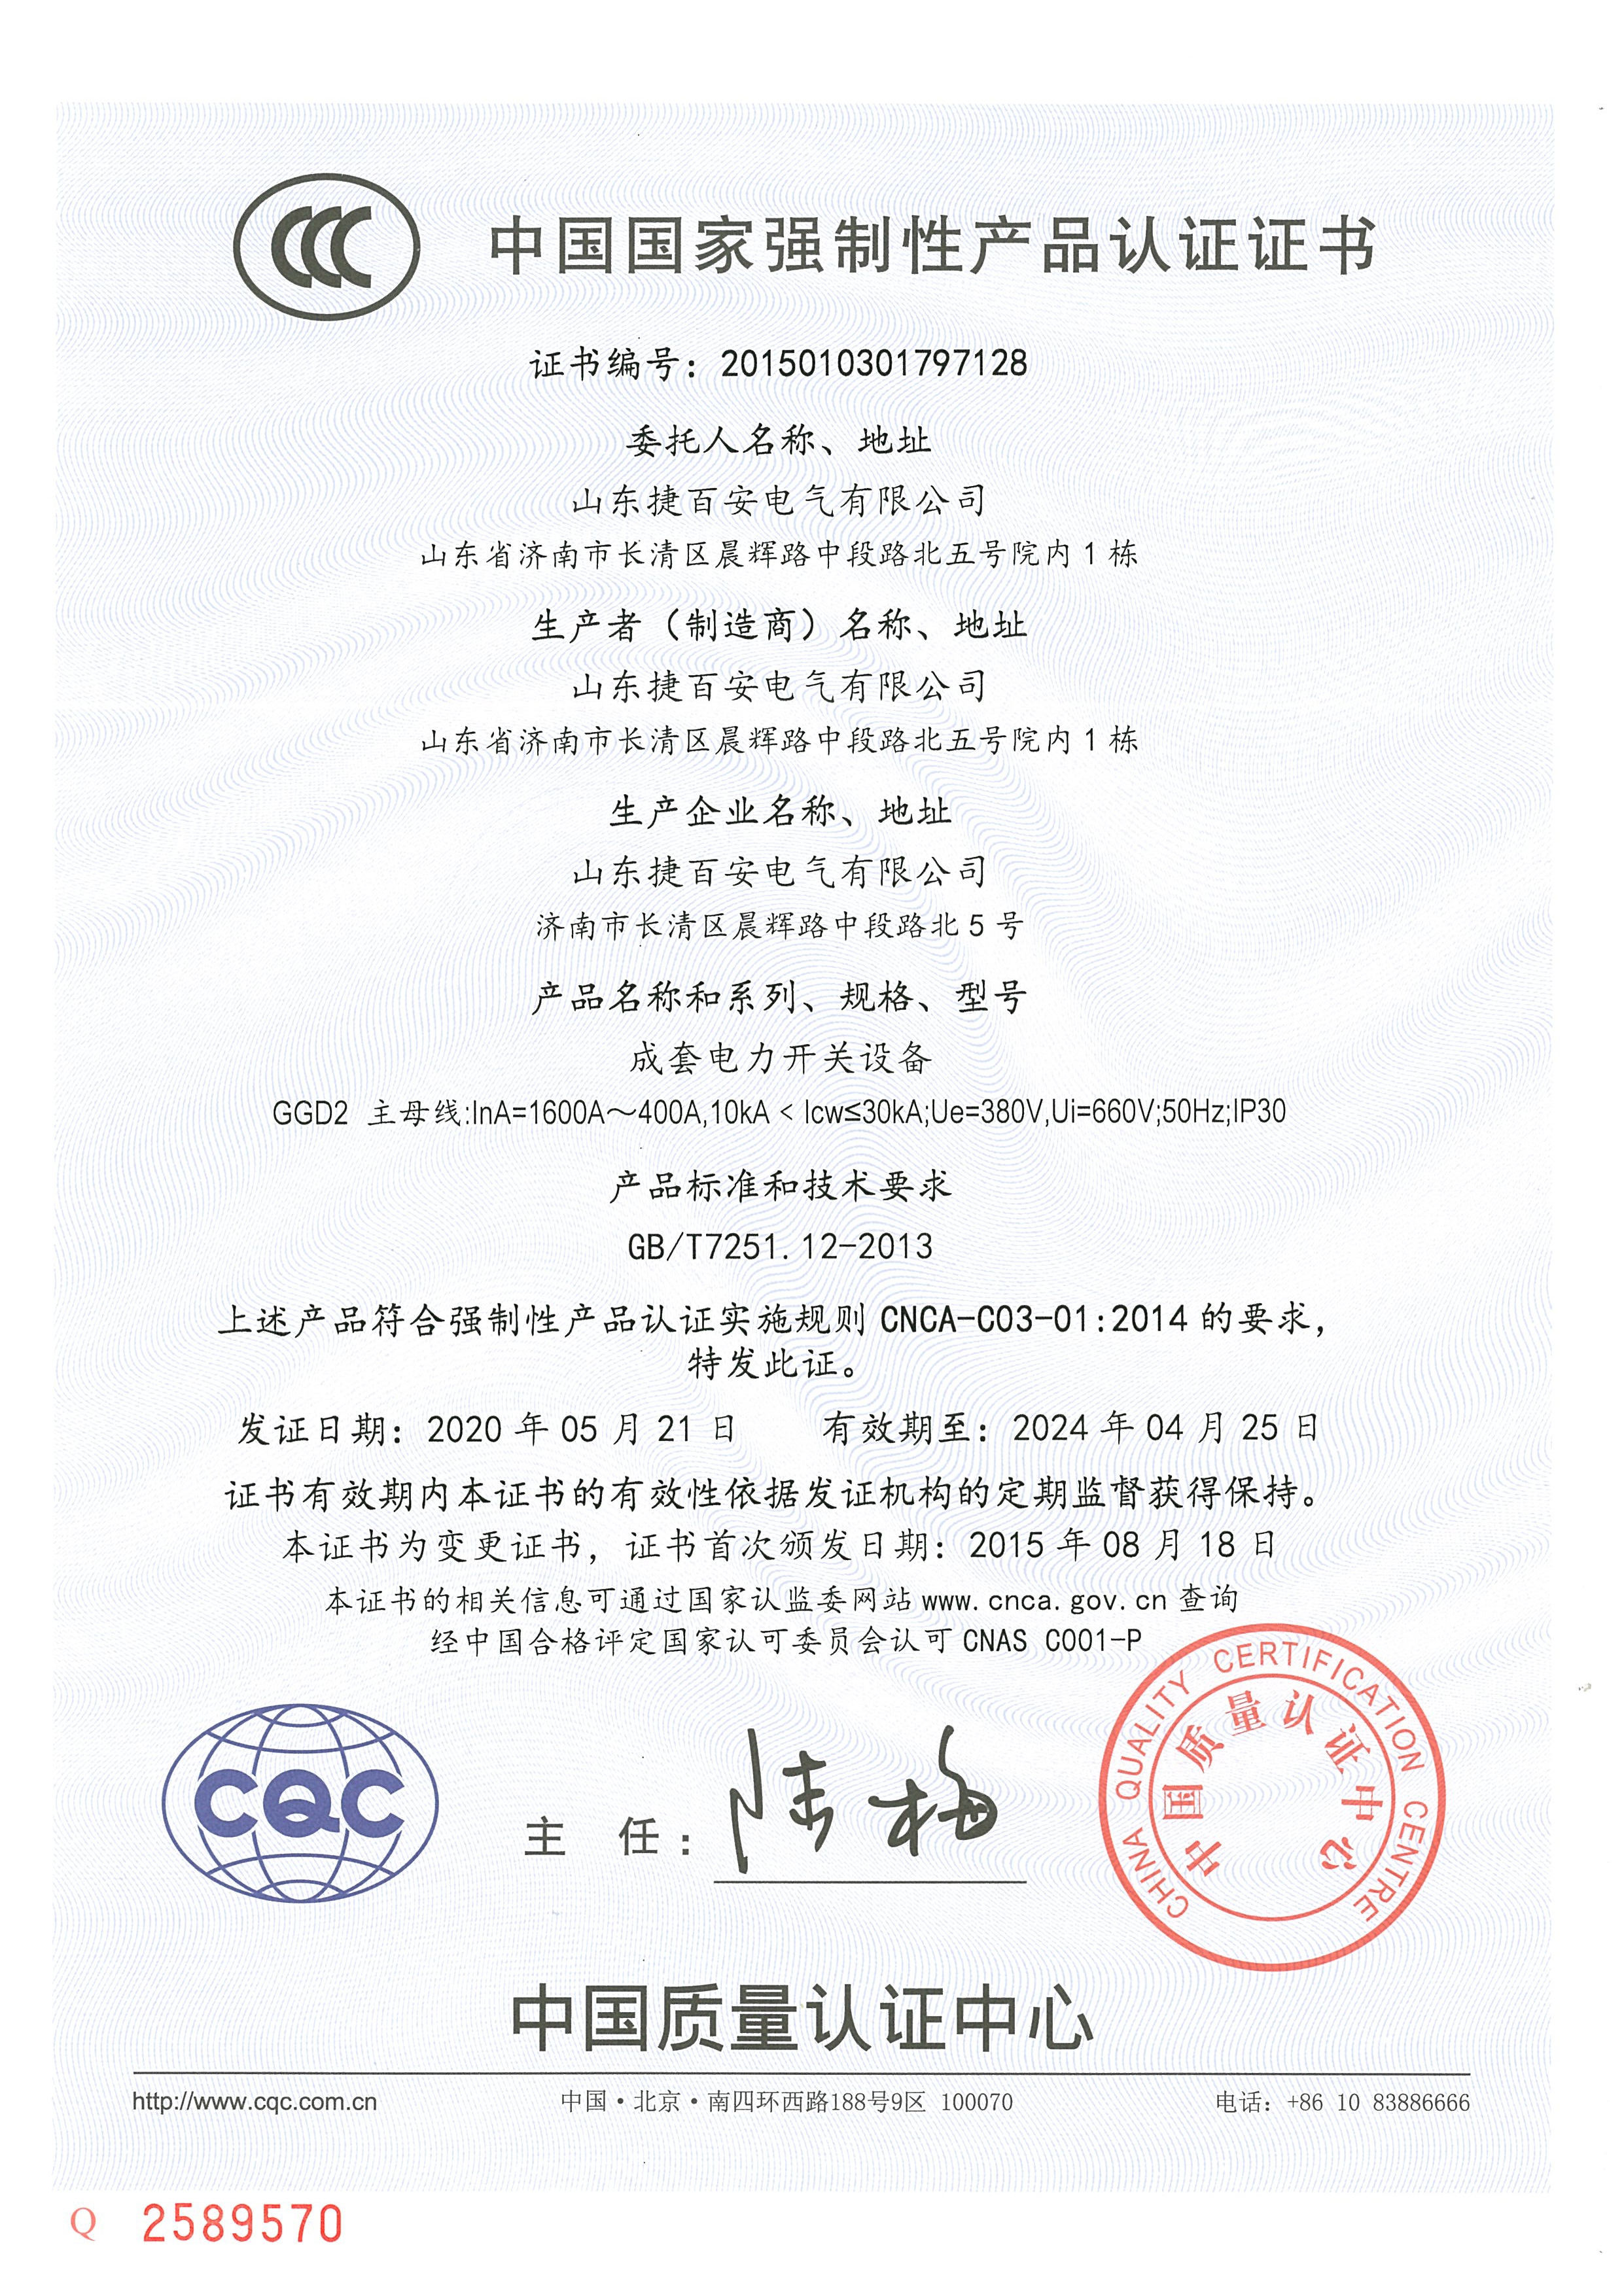 GGD系列CCC认证证书